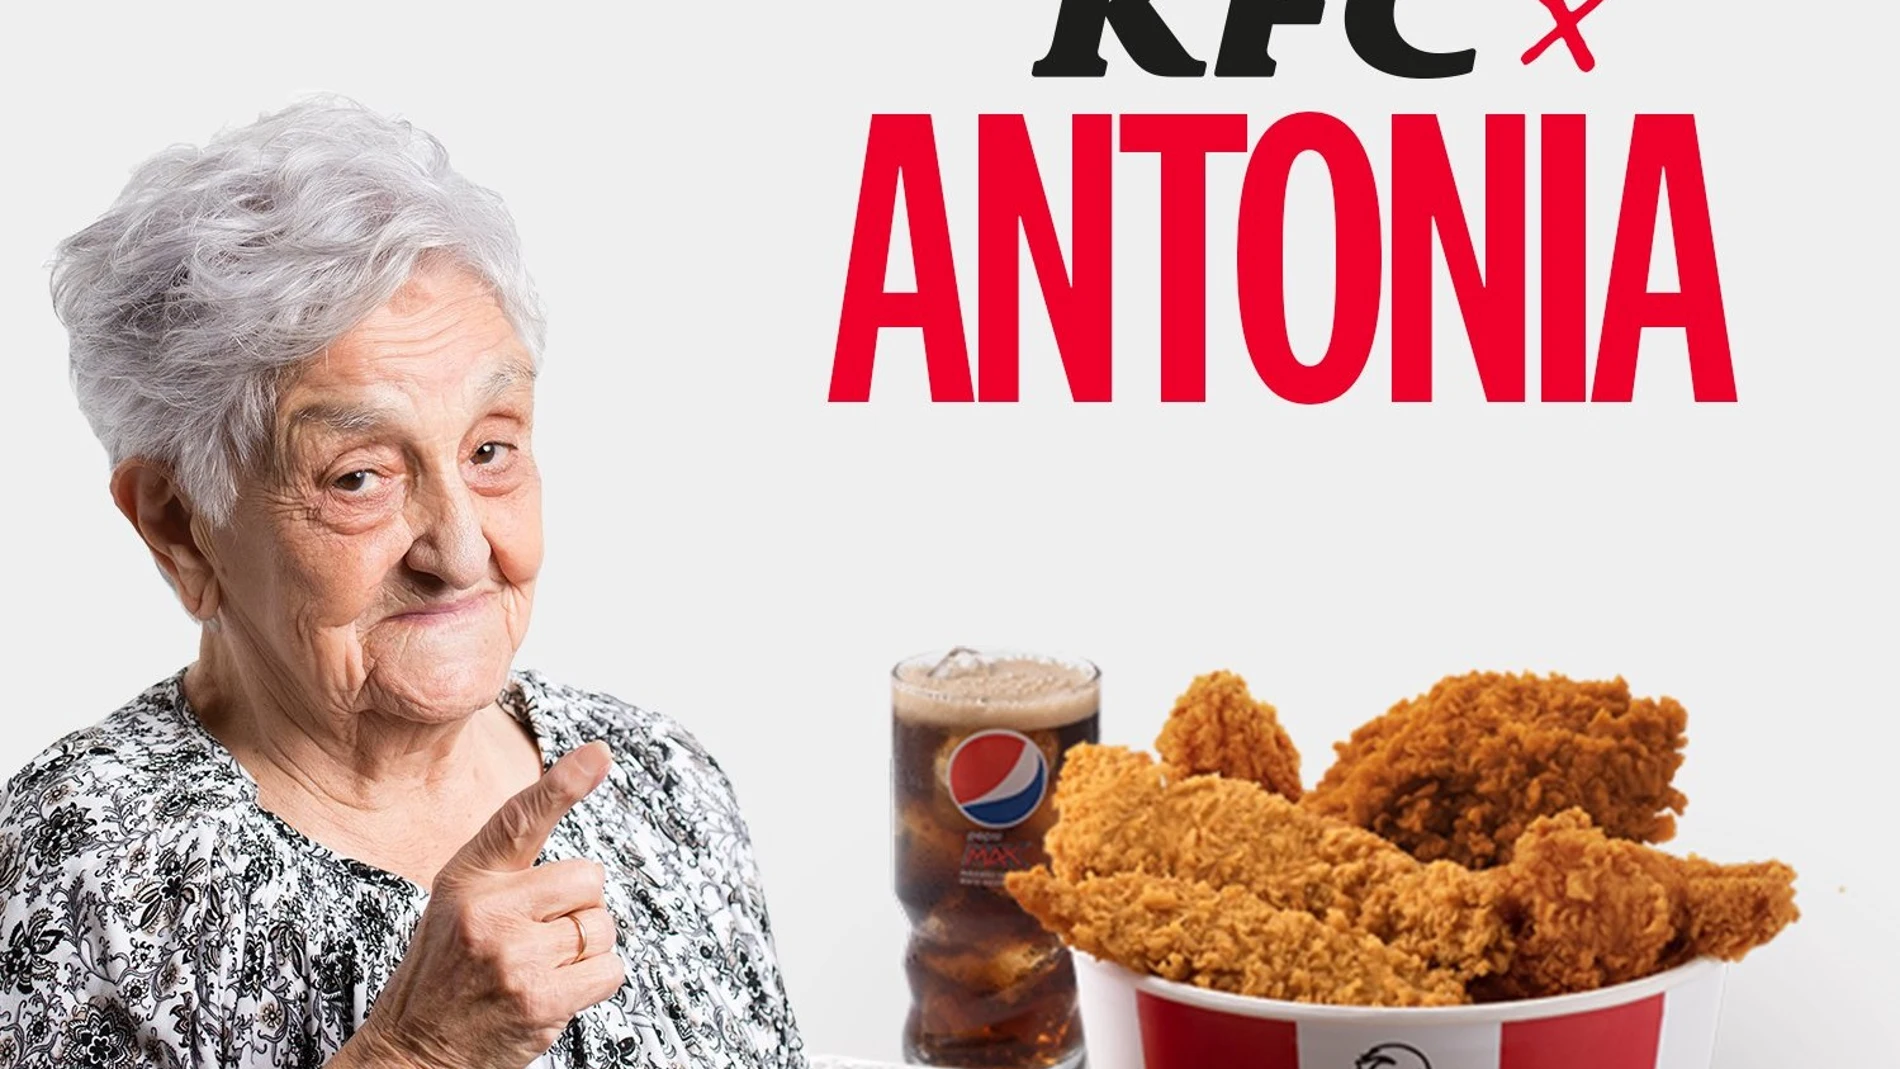 KFC x Antonia